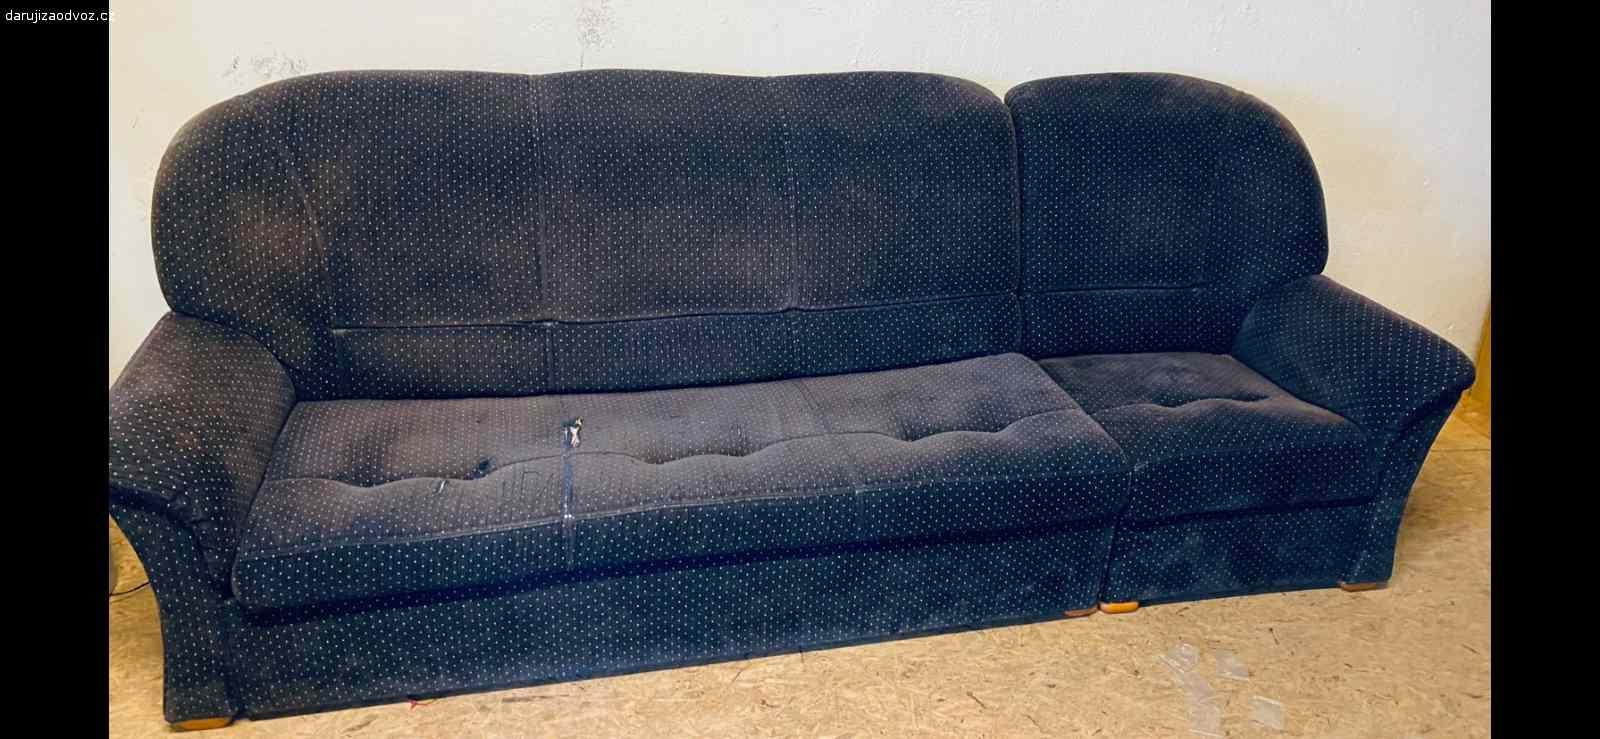 daruji tmavě modrý rozložitelný gauč. daruji 2.5 metru dlouhý tmavě modrý gauč rozložitelný podélně (180 + 70 cm), dá se rozložit i na spaní viz fotky. vlastní odvoz nutný z prahy 10 (vrsovice, na bohdalci)